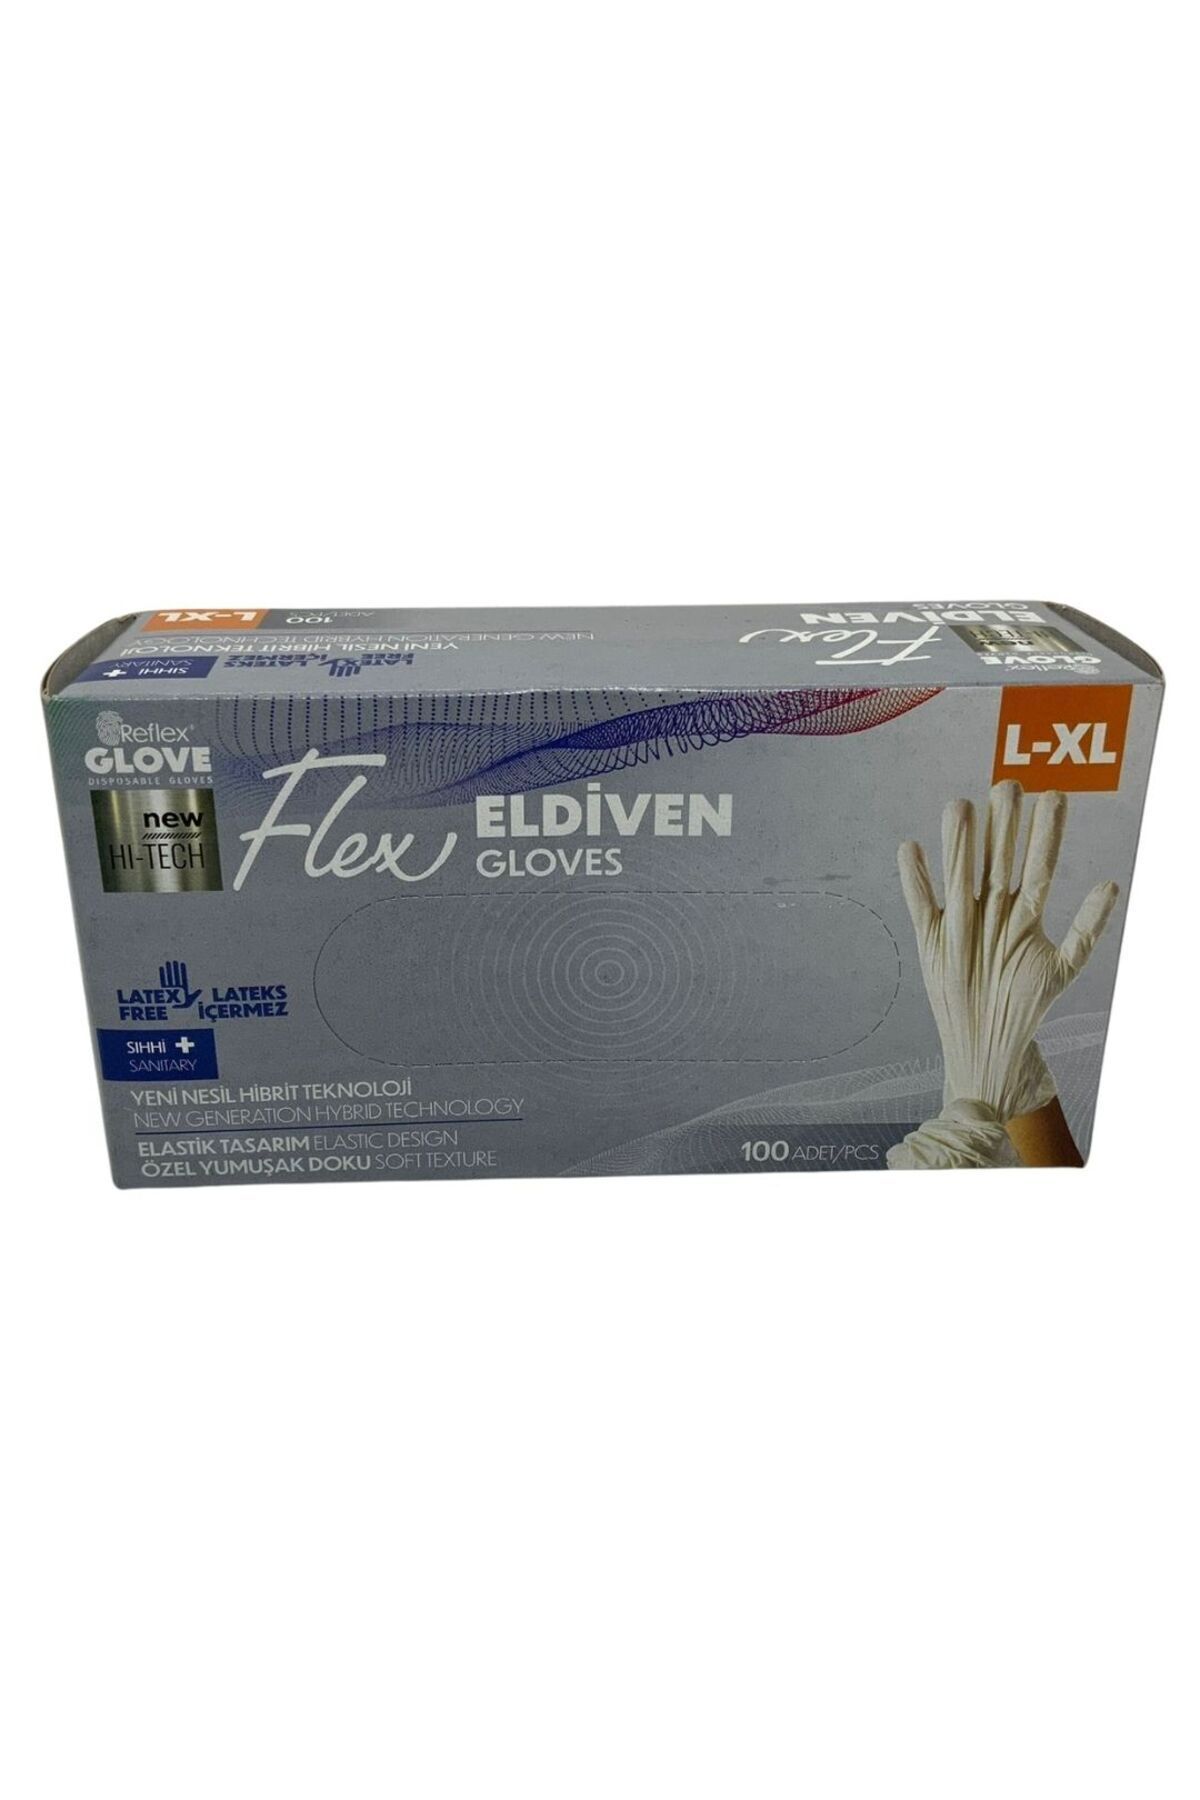 Reflex Glove Flex Eldiven L-XL 100 Adet